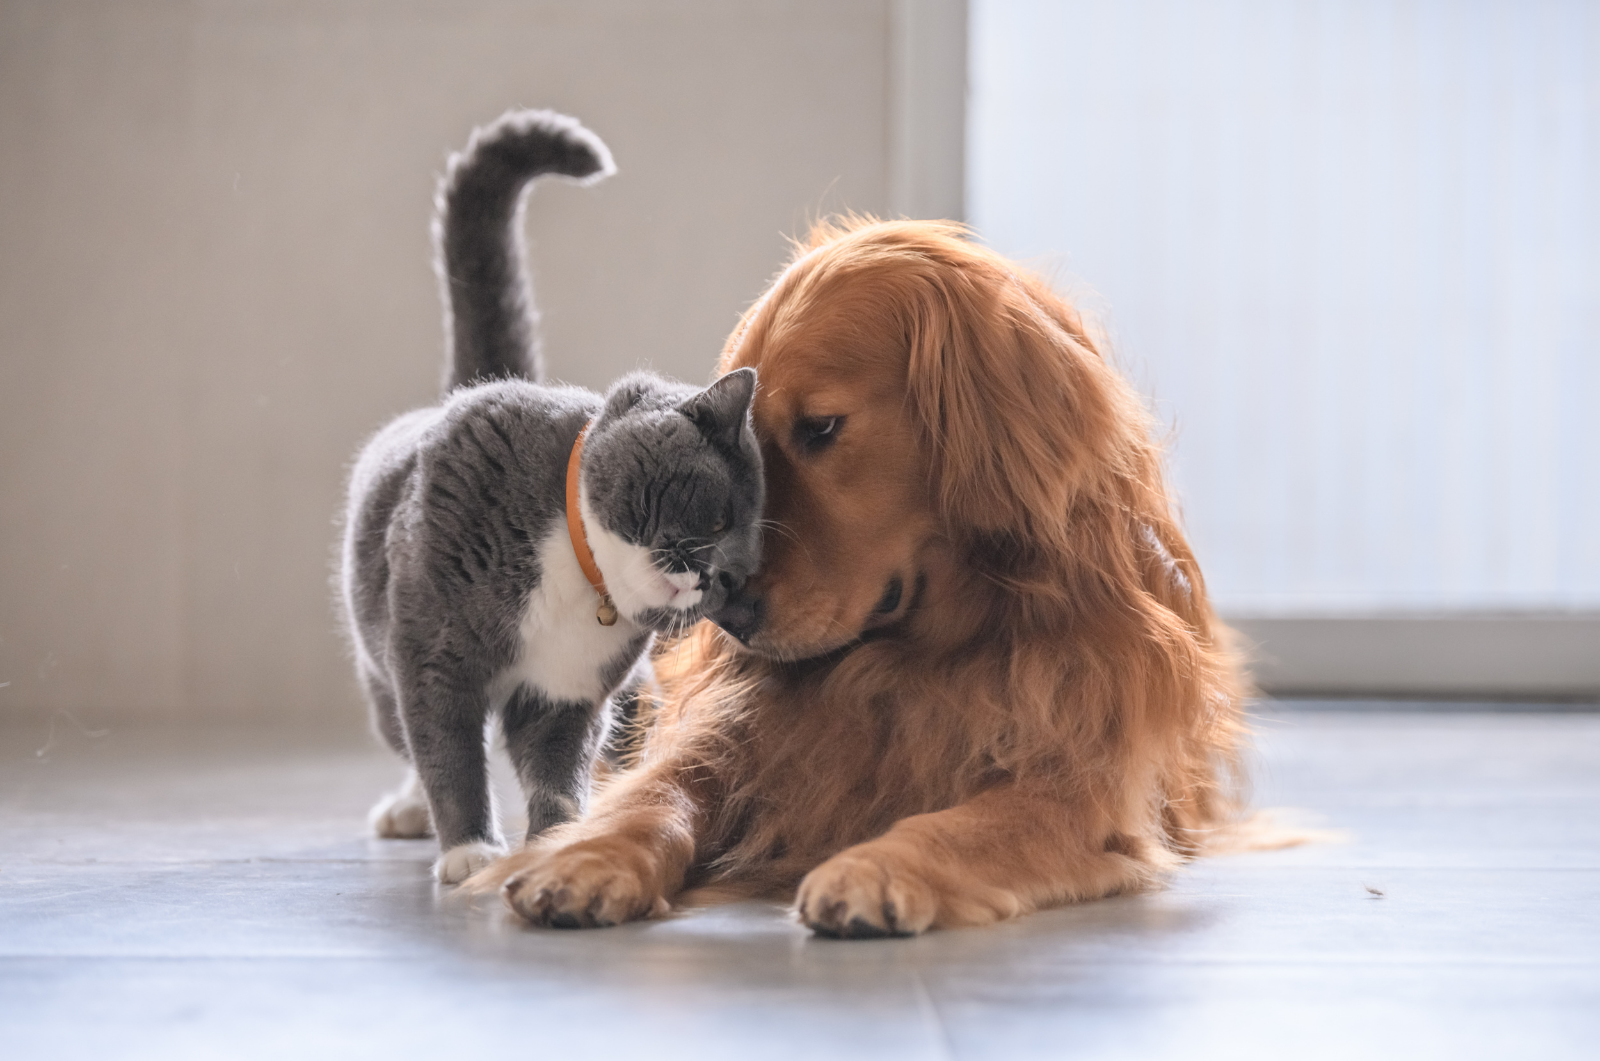 کتوں اور بلیوں میں مشترکہ مسائل